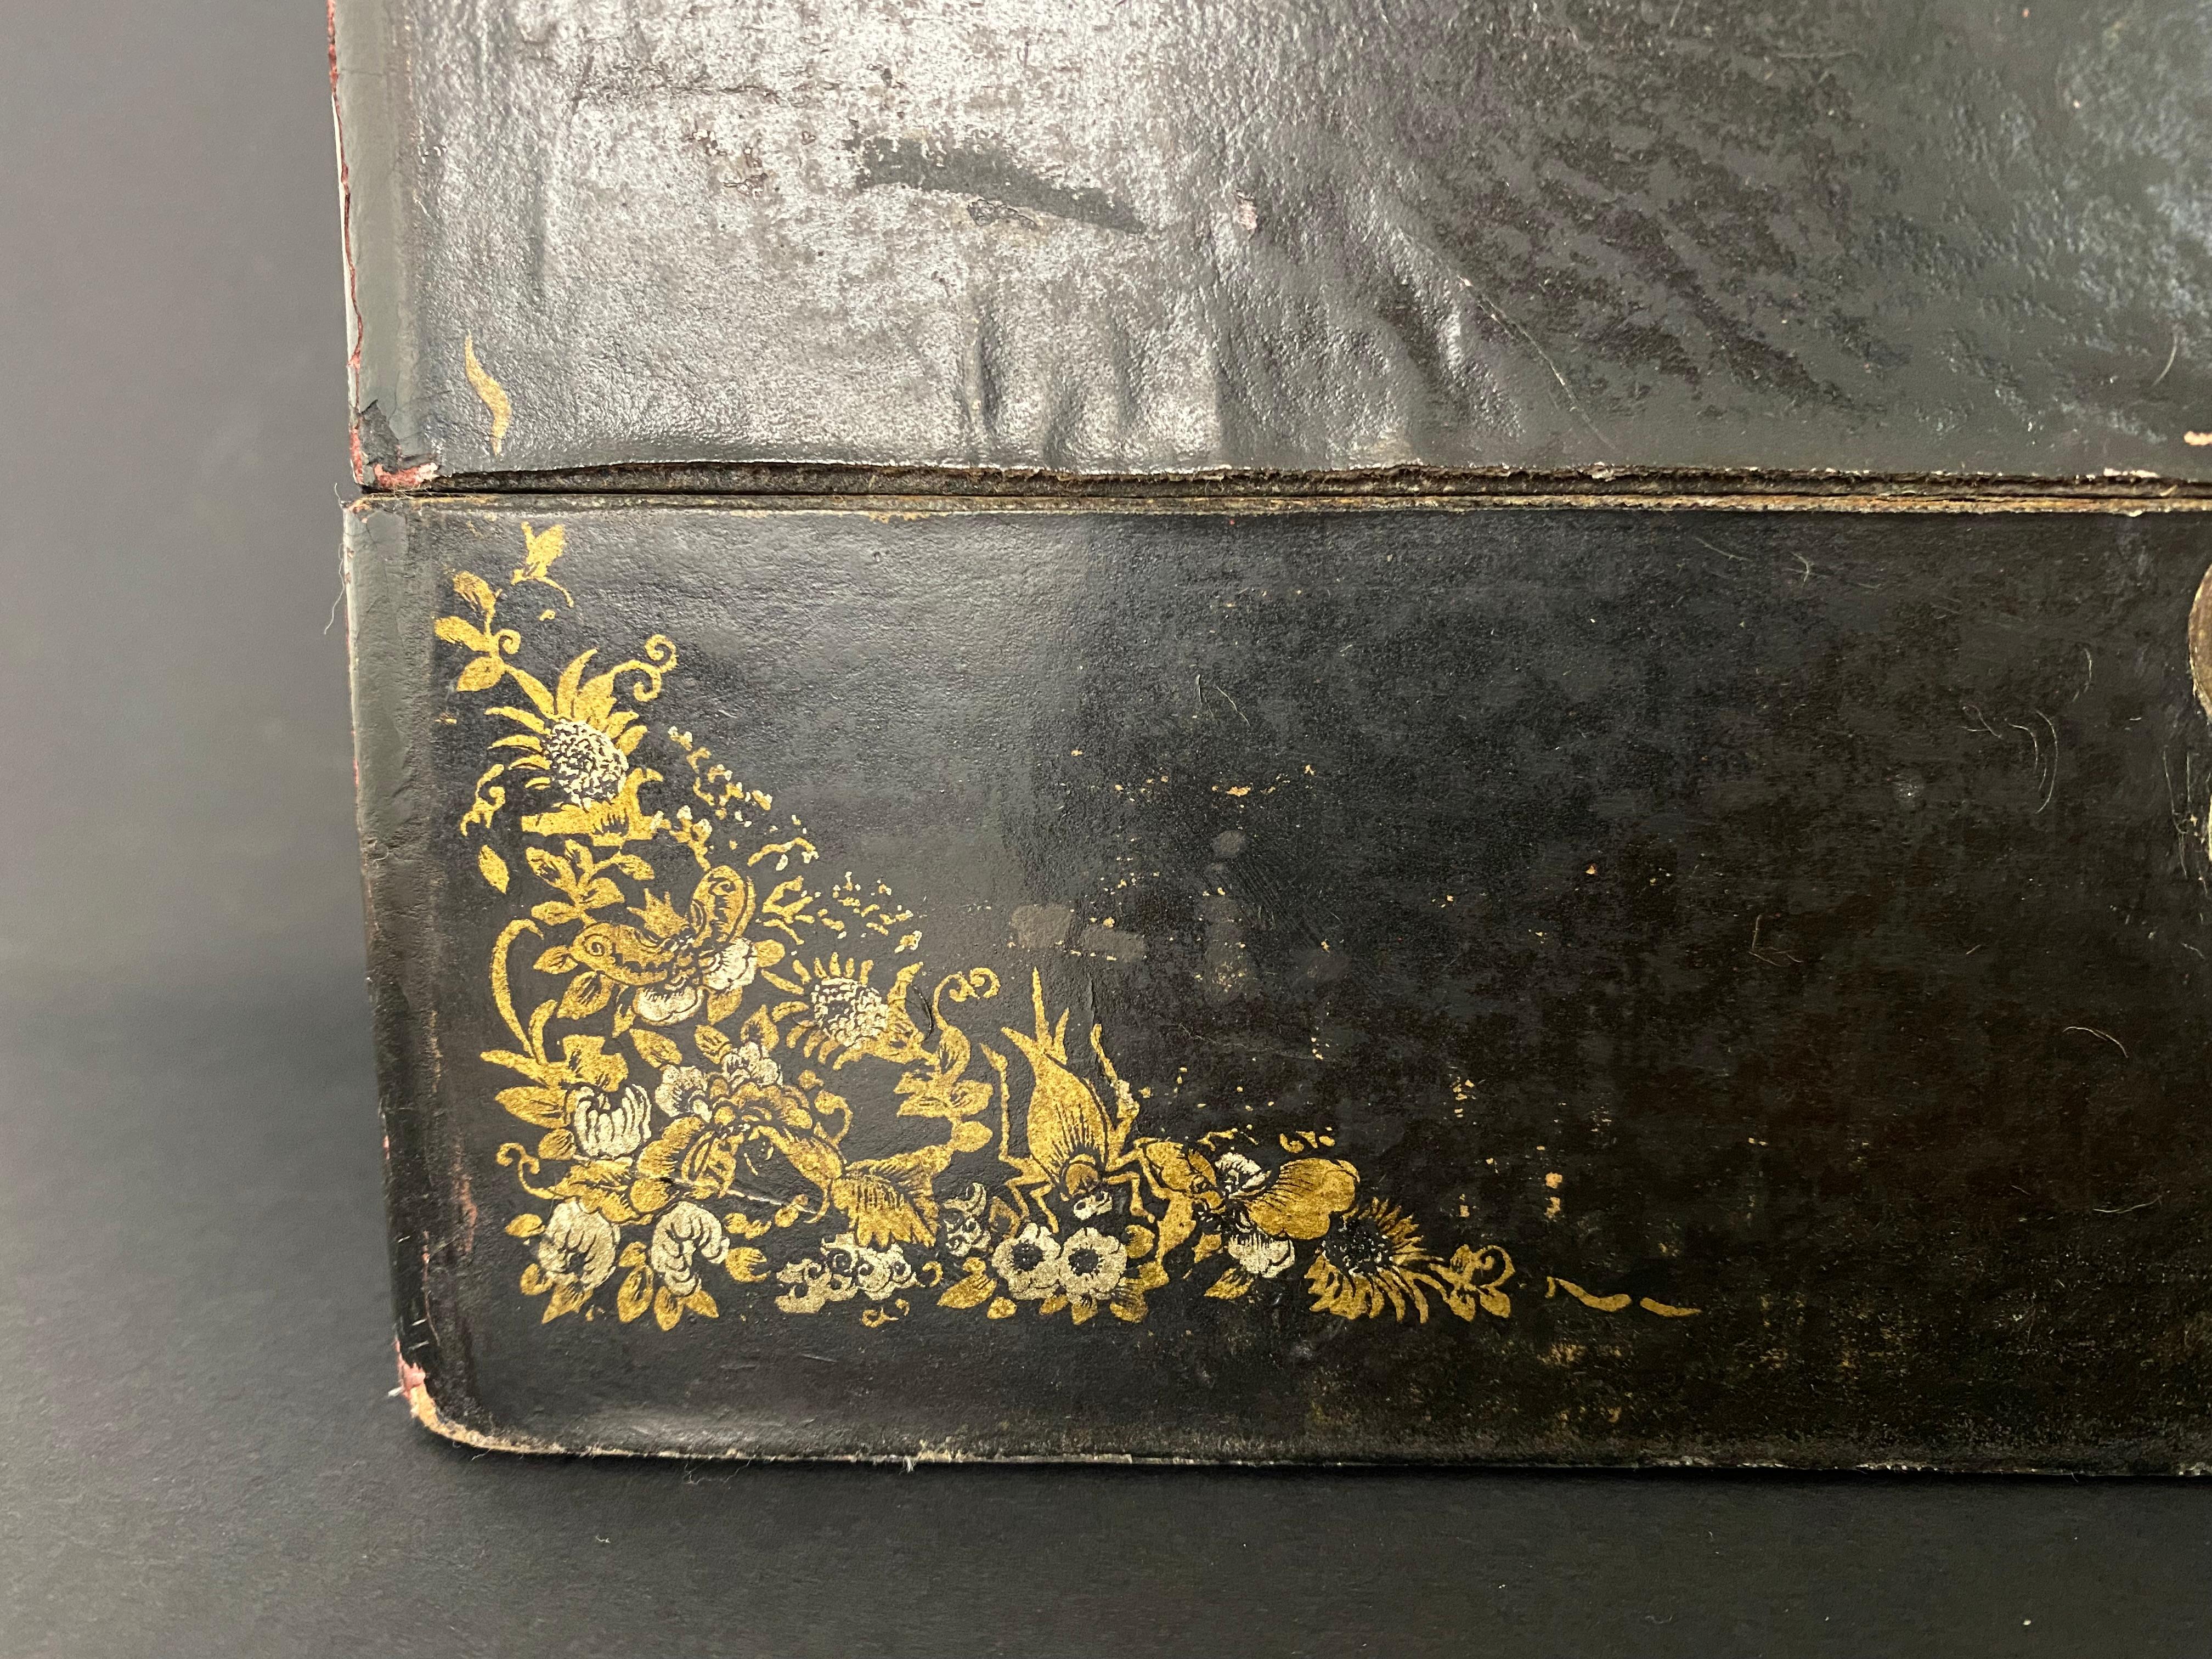 Sehr schöne Schachtel, die in der japanischen Kultur auch als Kissen verwendet wird, Anfang des 20. Jahrhunderts. Er ist schwarz lackiert und mit handgemalten goldenen Blumenmustern verziert. Der kupferne Riegel ist schön mit einer Blume und einem